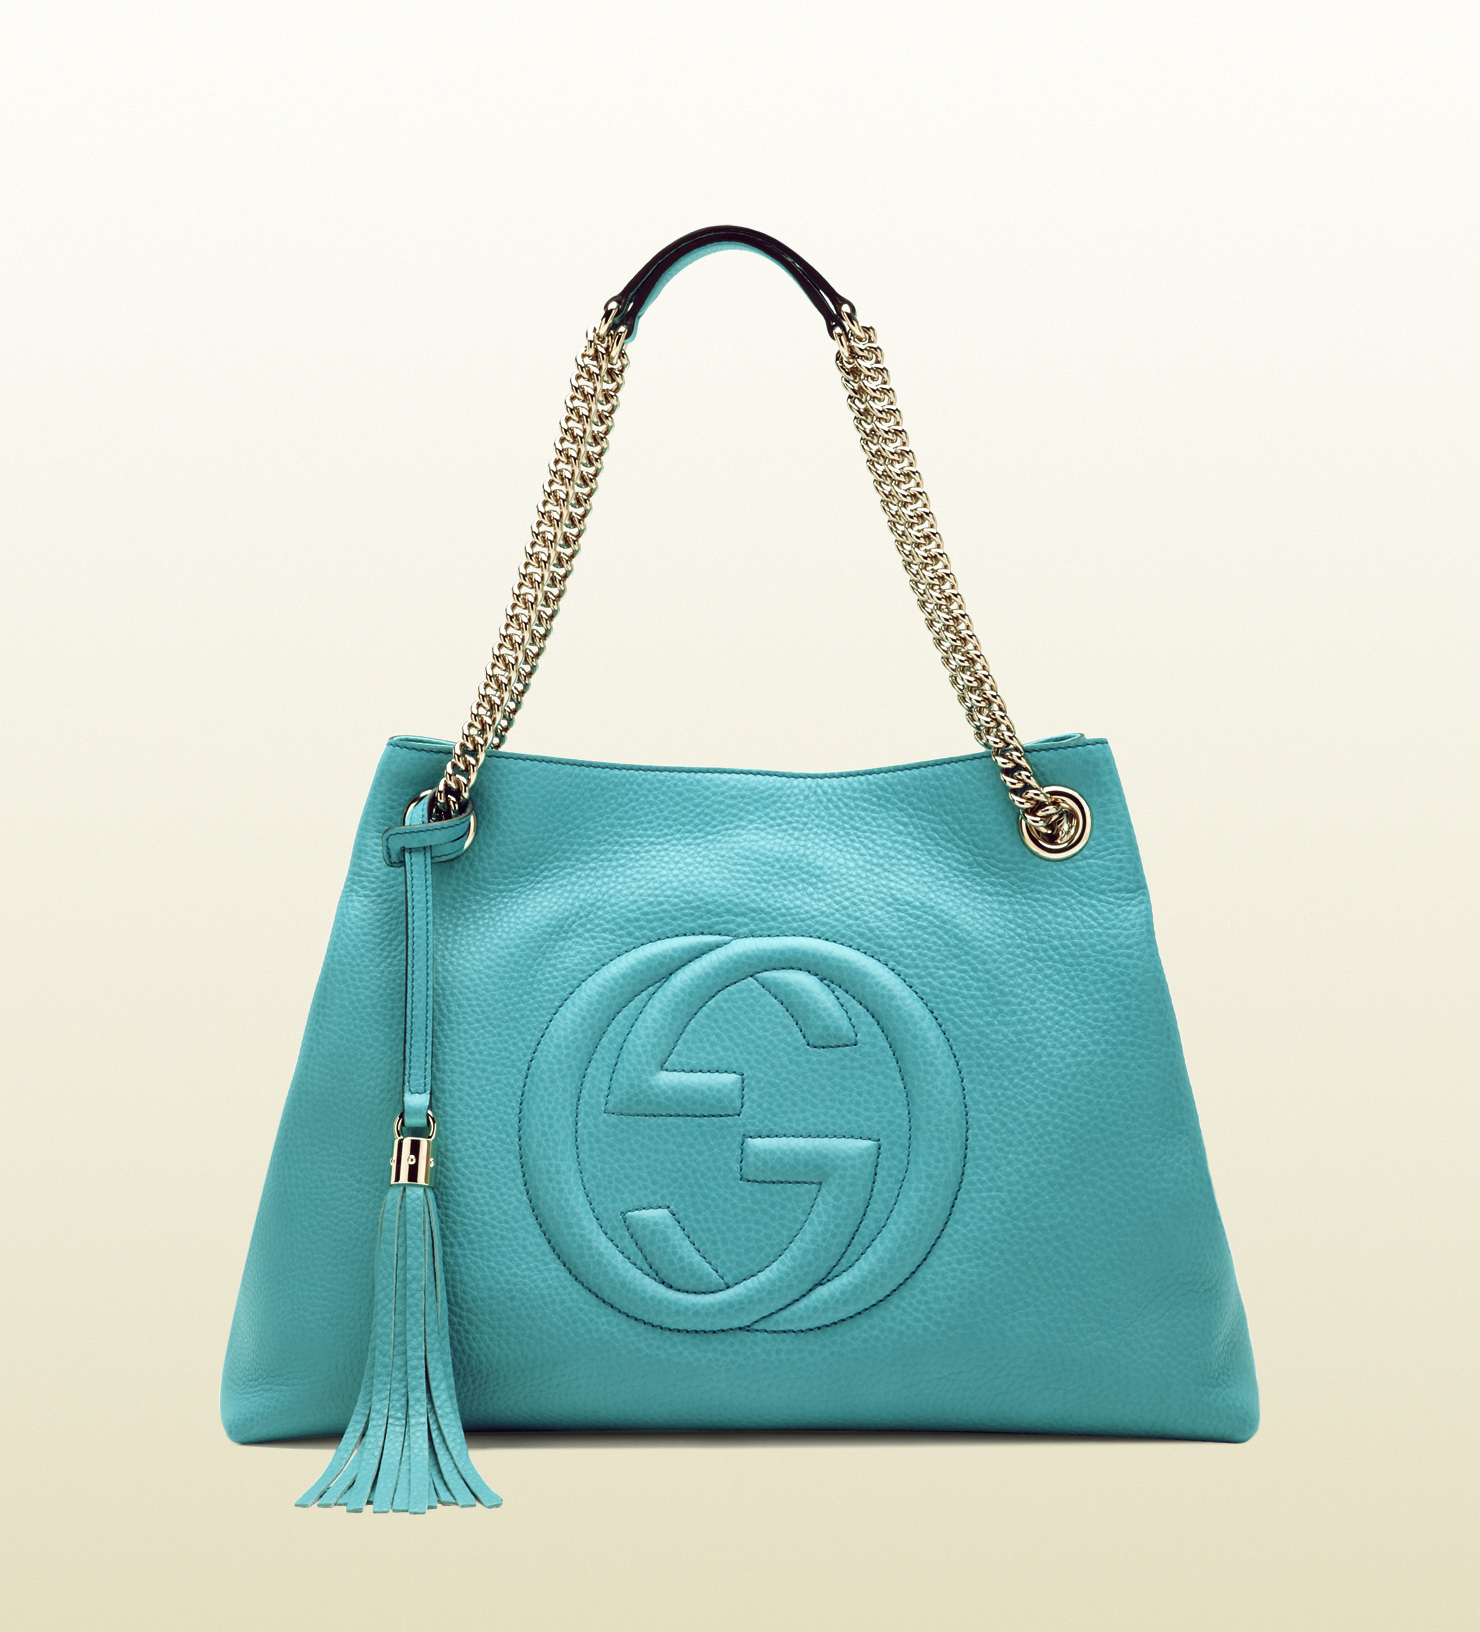 Lyst - Gucci Soho Light Blue Leather Shoulder Bag in Blue